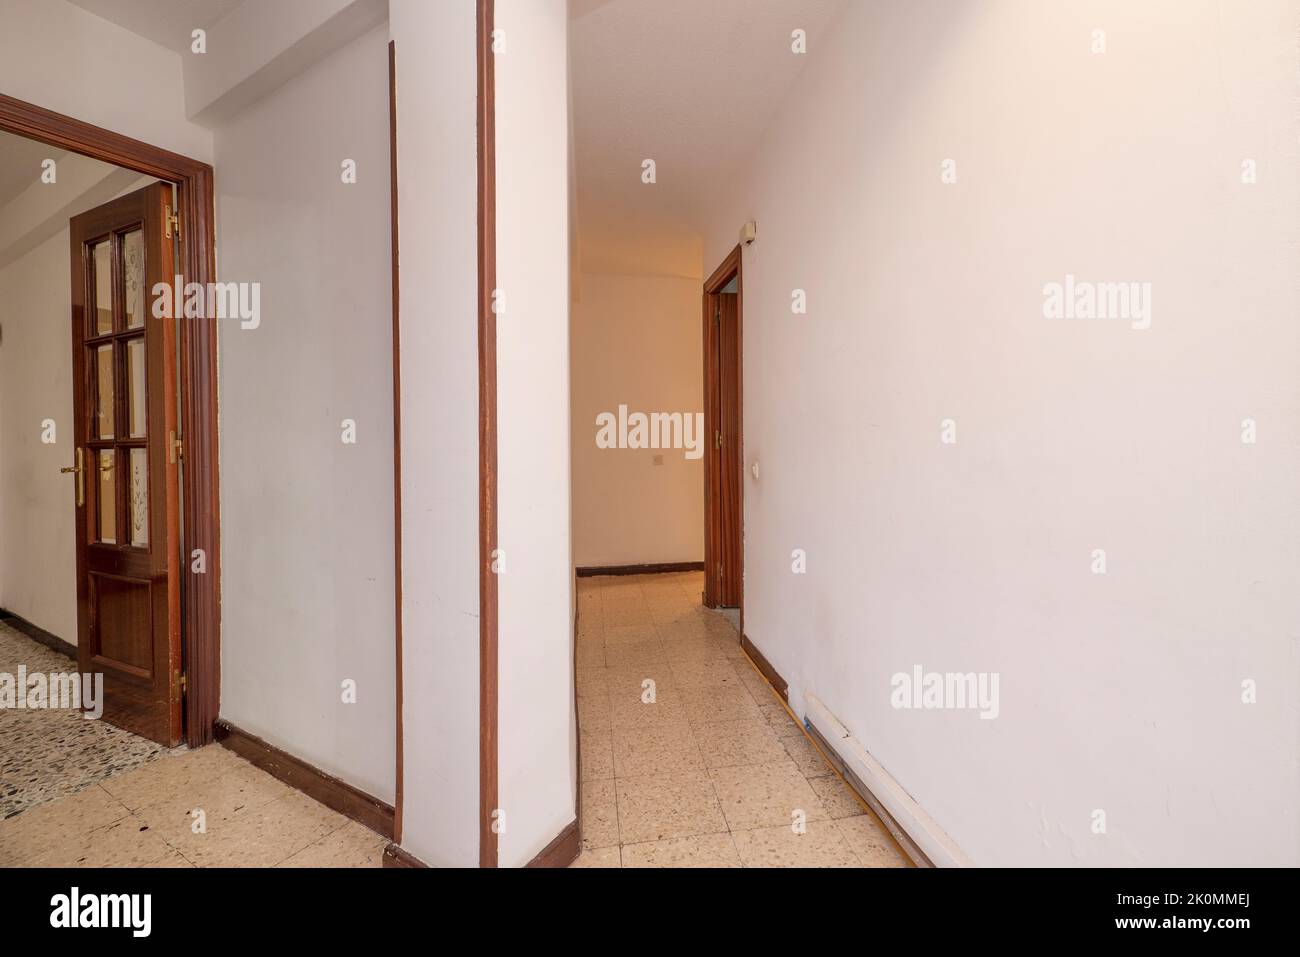 Division de couloir dans une maison vide avec de vieux planchers de terrazzo Banque D'Images